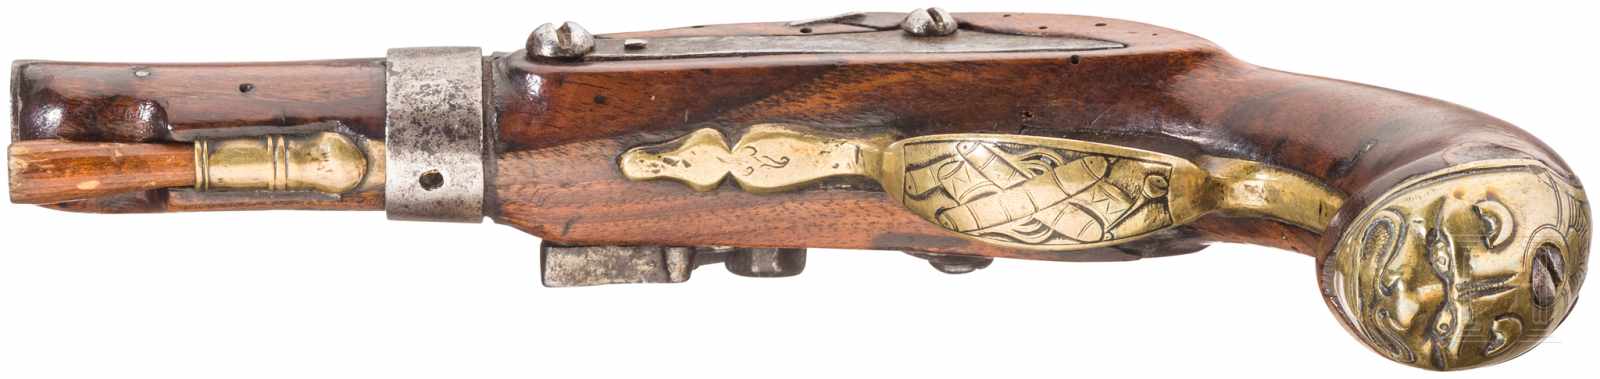 Zwei Pistolen, 2. Hälfte 18. Jhdt. bzw. um 1800Steinschlosspistole mit glattem Lauf im Kaliber 12 - Image 4 of 4